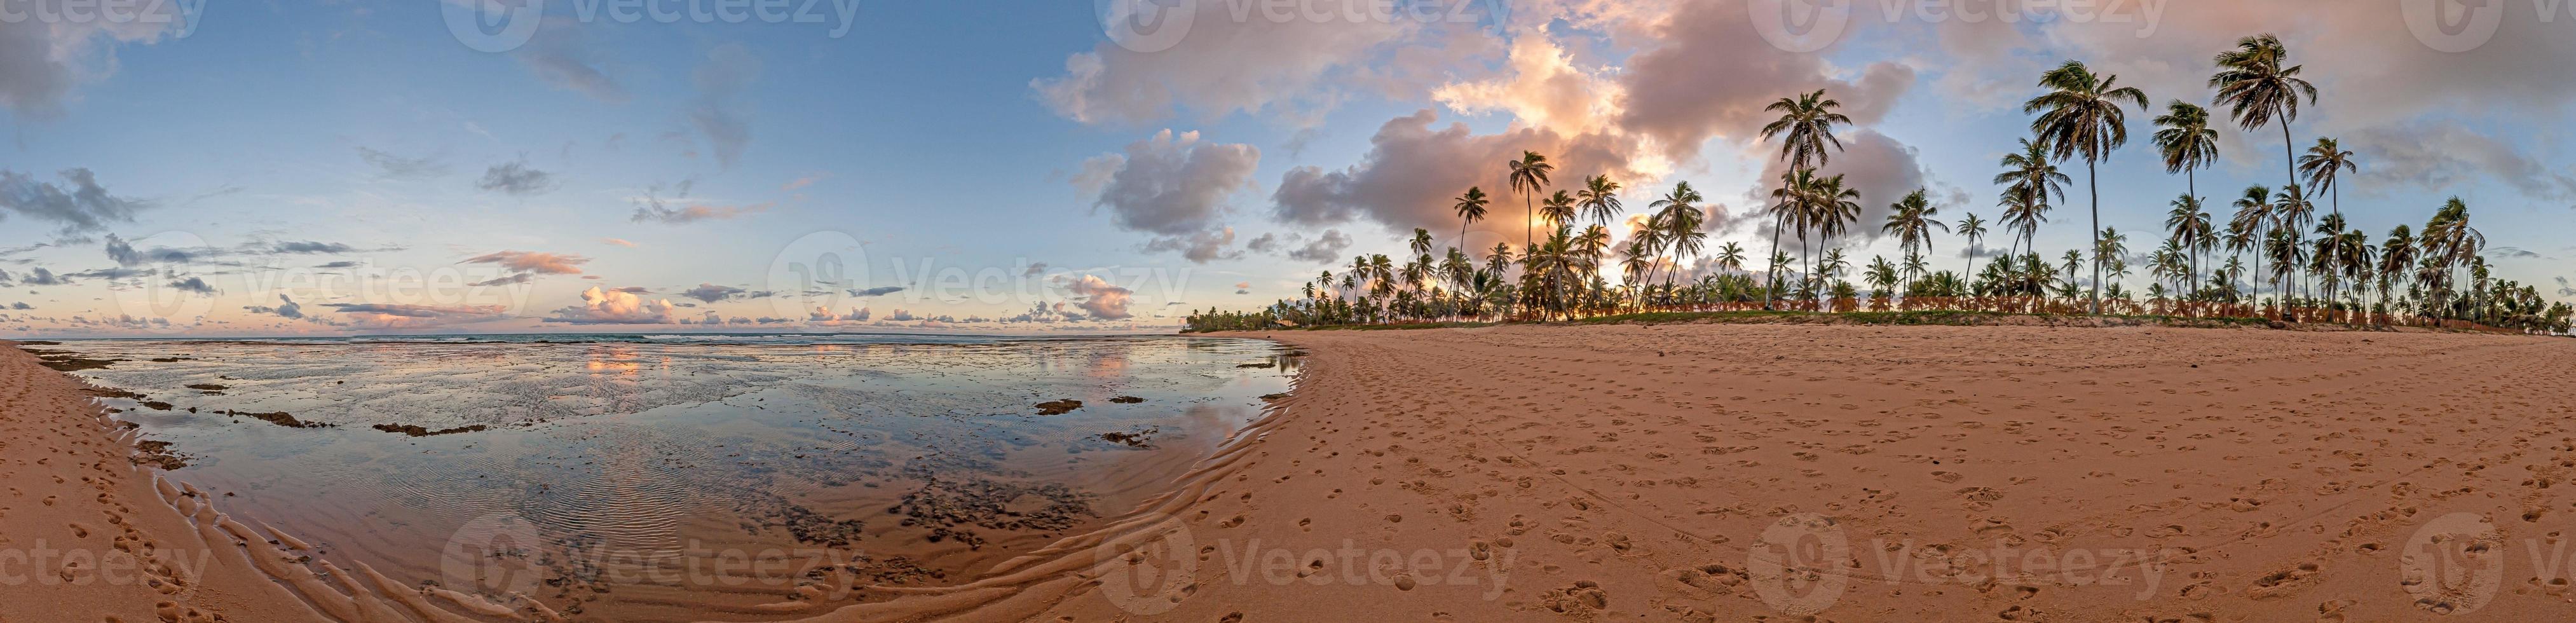 vue panoramique sur la plage sans fin et déserte de praia do forte dans la province brésilienne de bahia pendant la journée photo